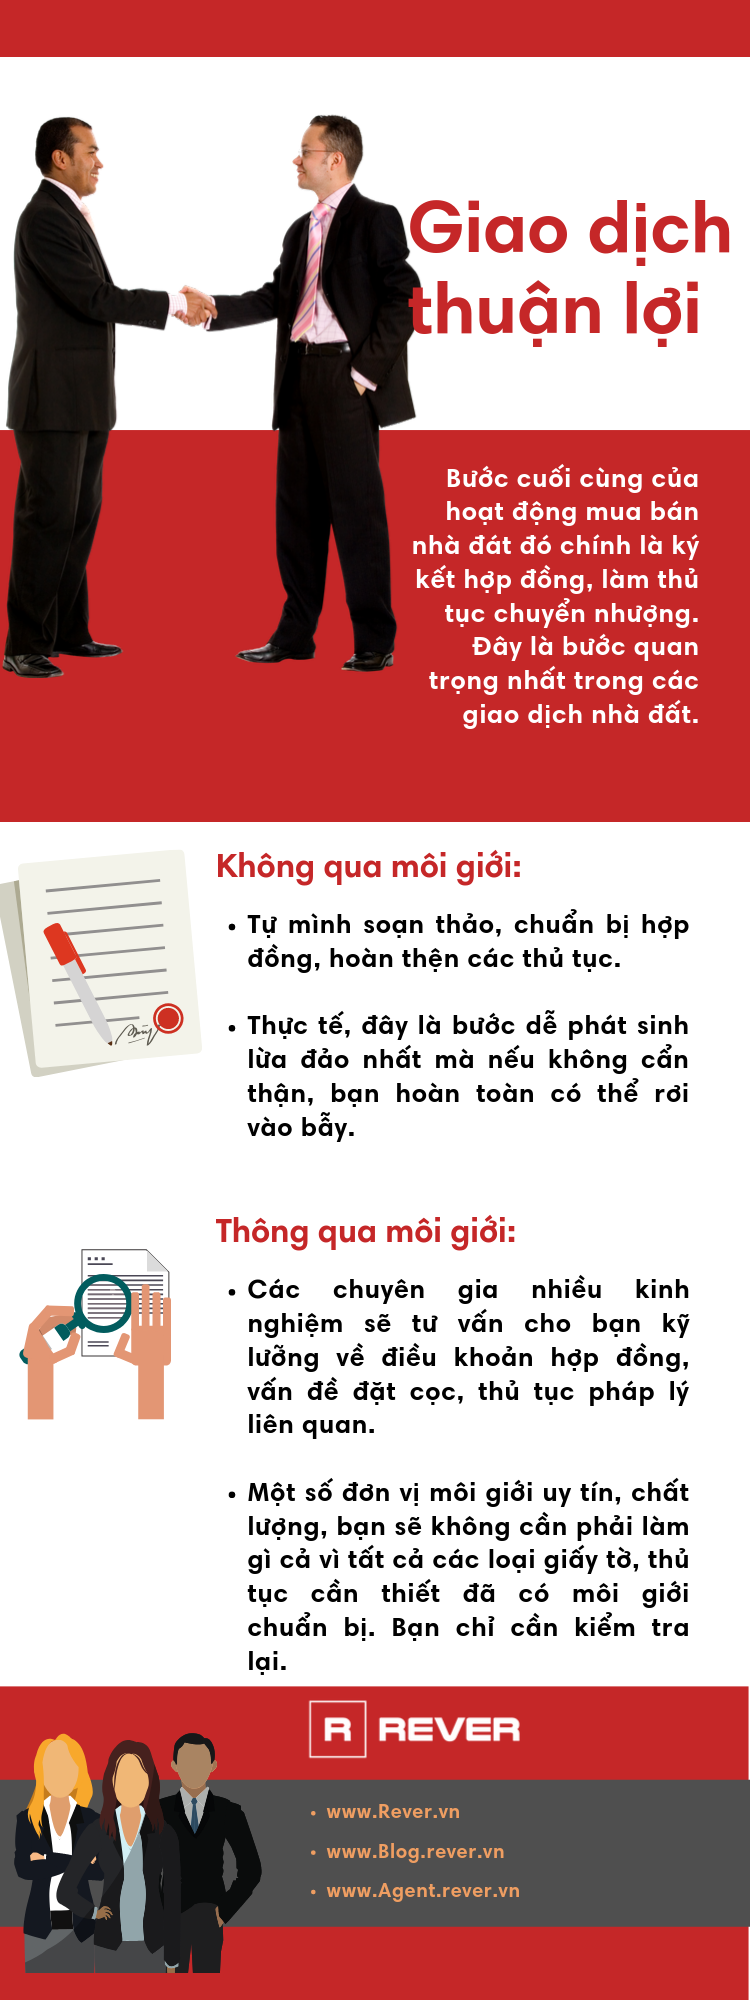 infographic-5-loi-ich-khi-mua-nha-qua-moi-gioi